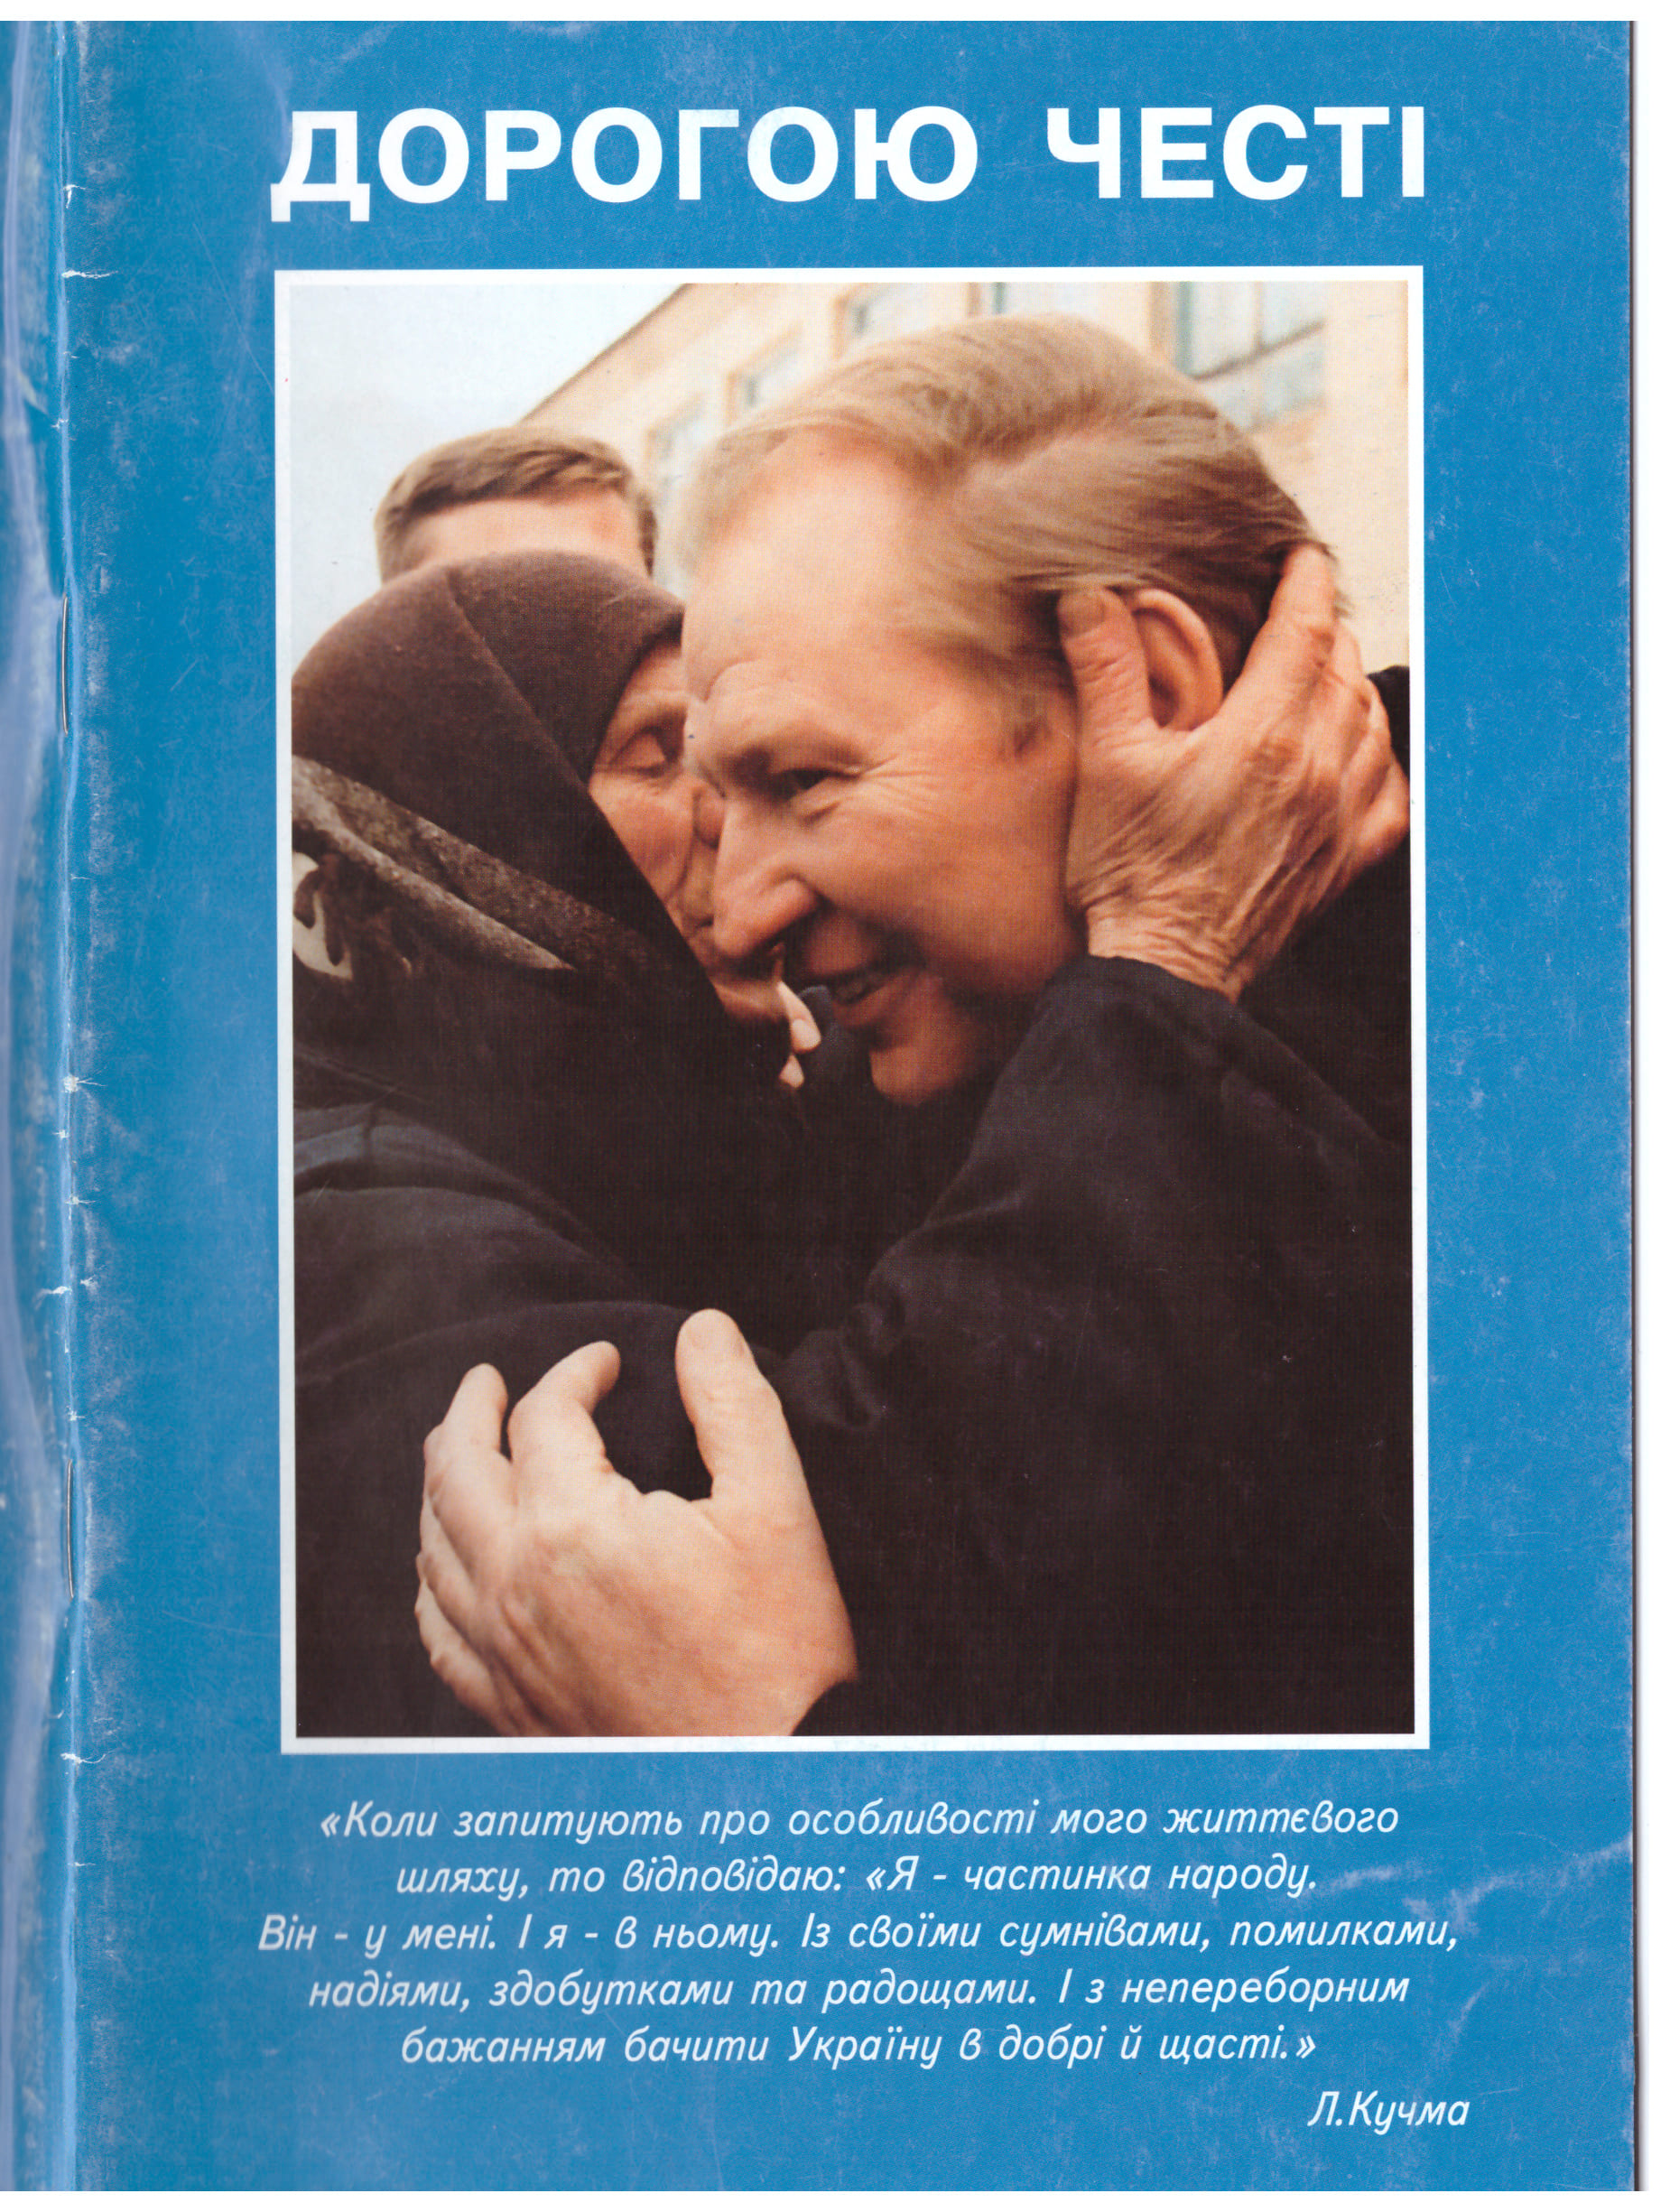 Украине 30: президентские выборы и миссия в Косово: чем запомнился 1999 год — фото 1